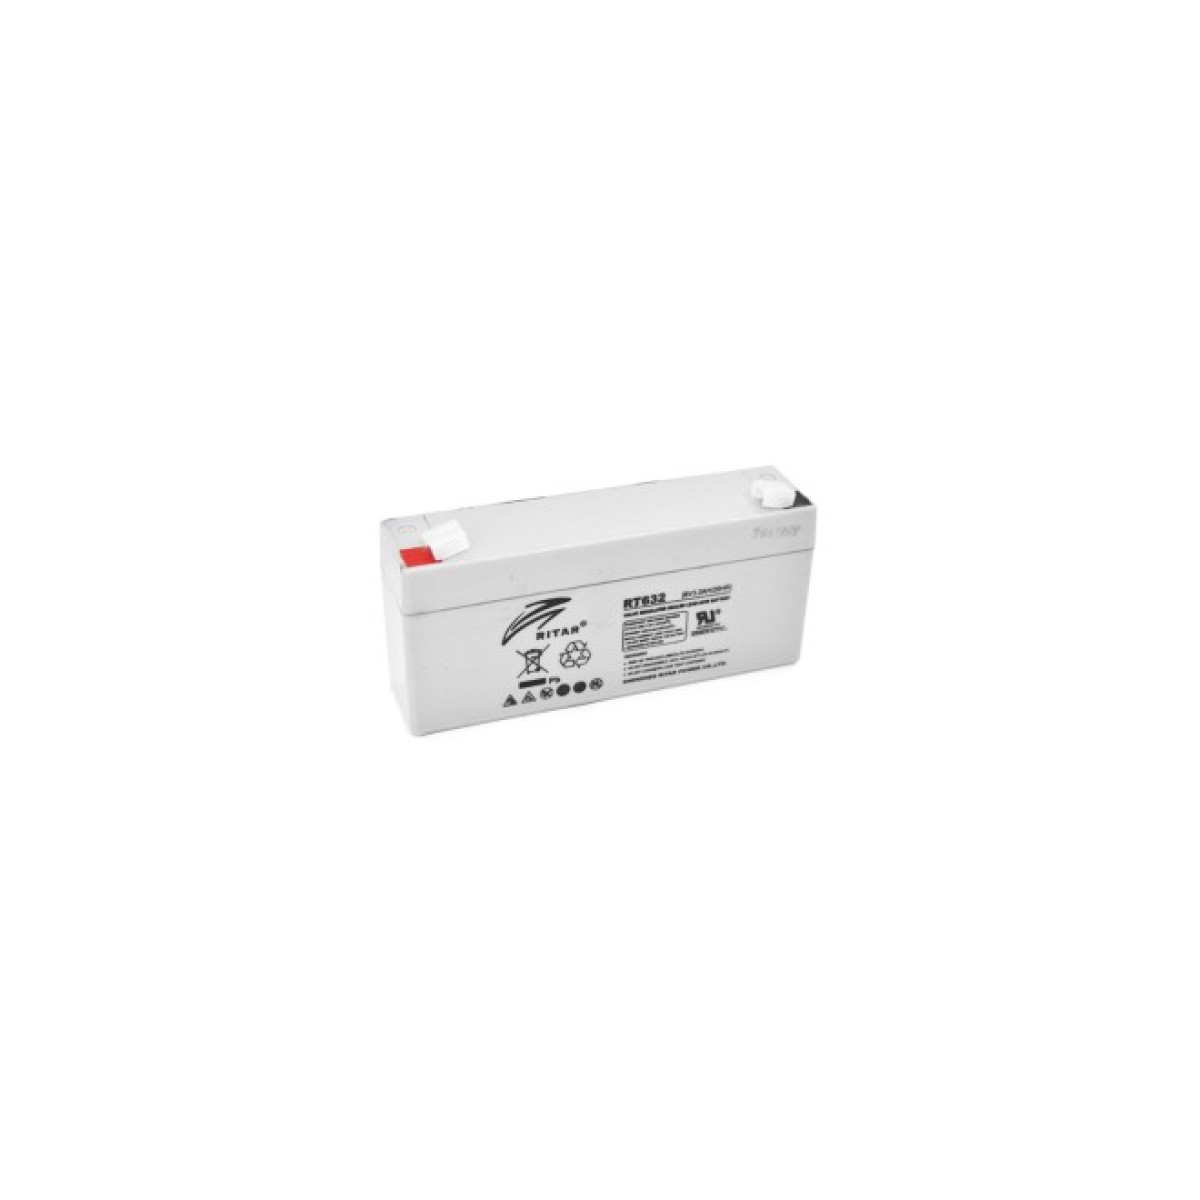 Батарея до ДБЖ Ritar AGM RT632, 6V-3.2Ah (RT632) 98_98.jpg